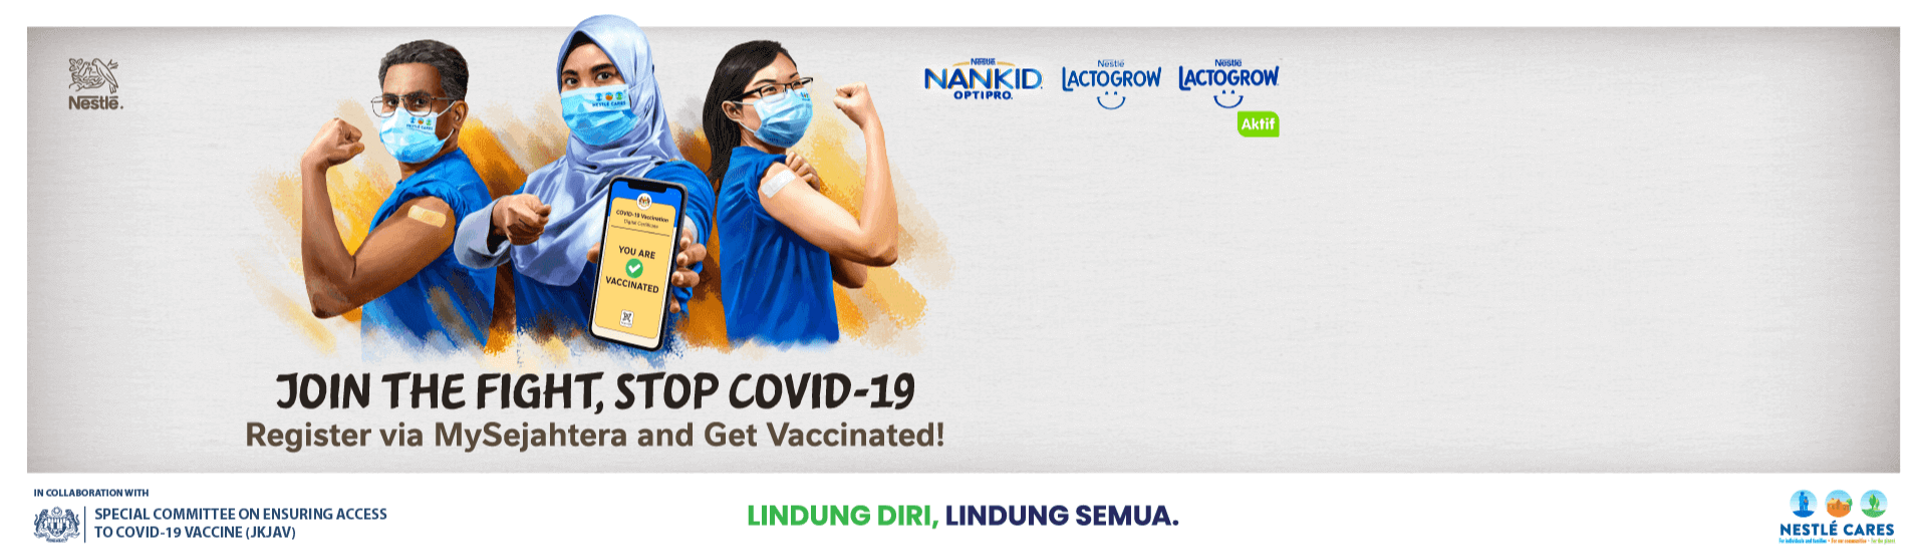 Nestlé Cares Vaccination Campaign v2